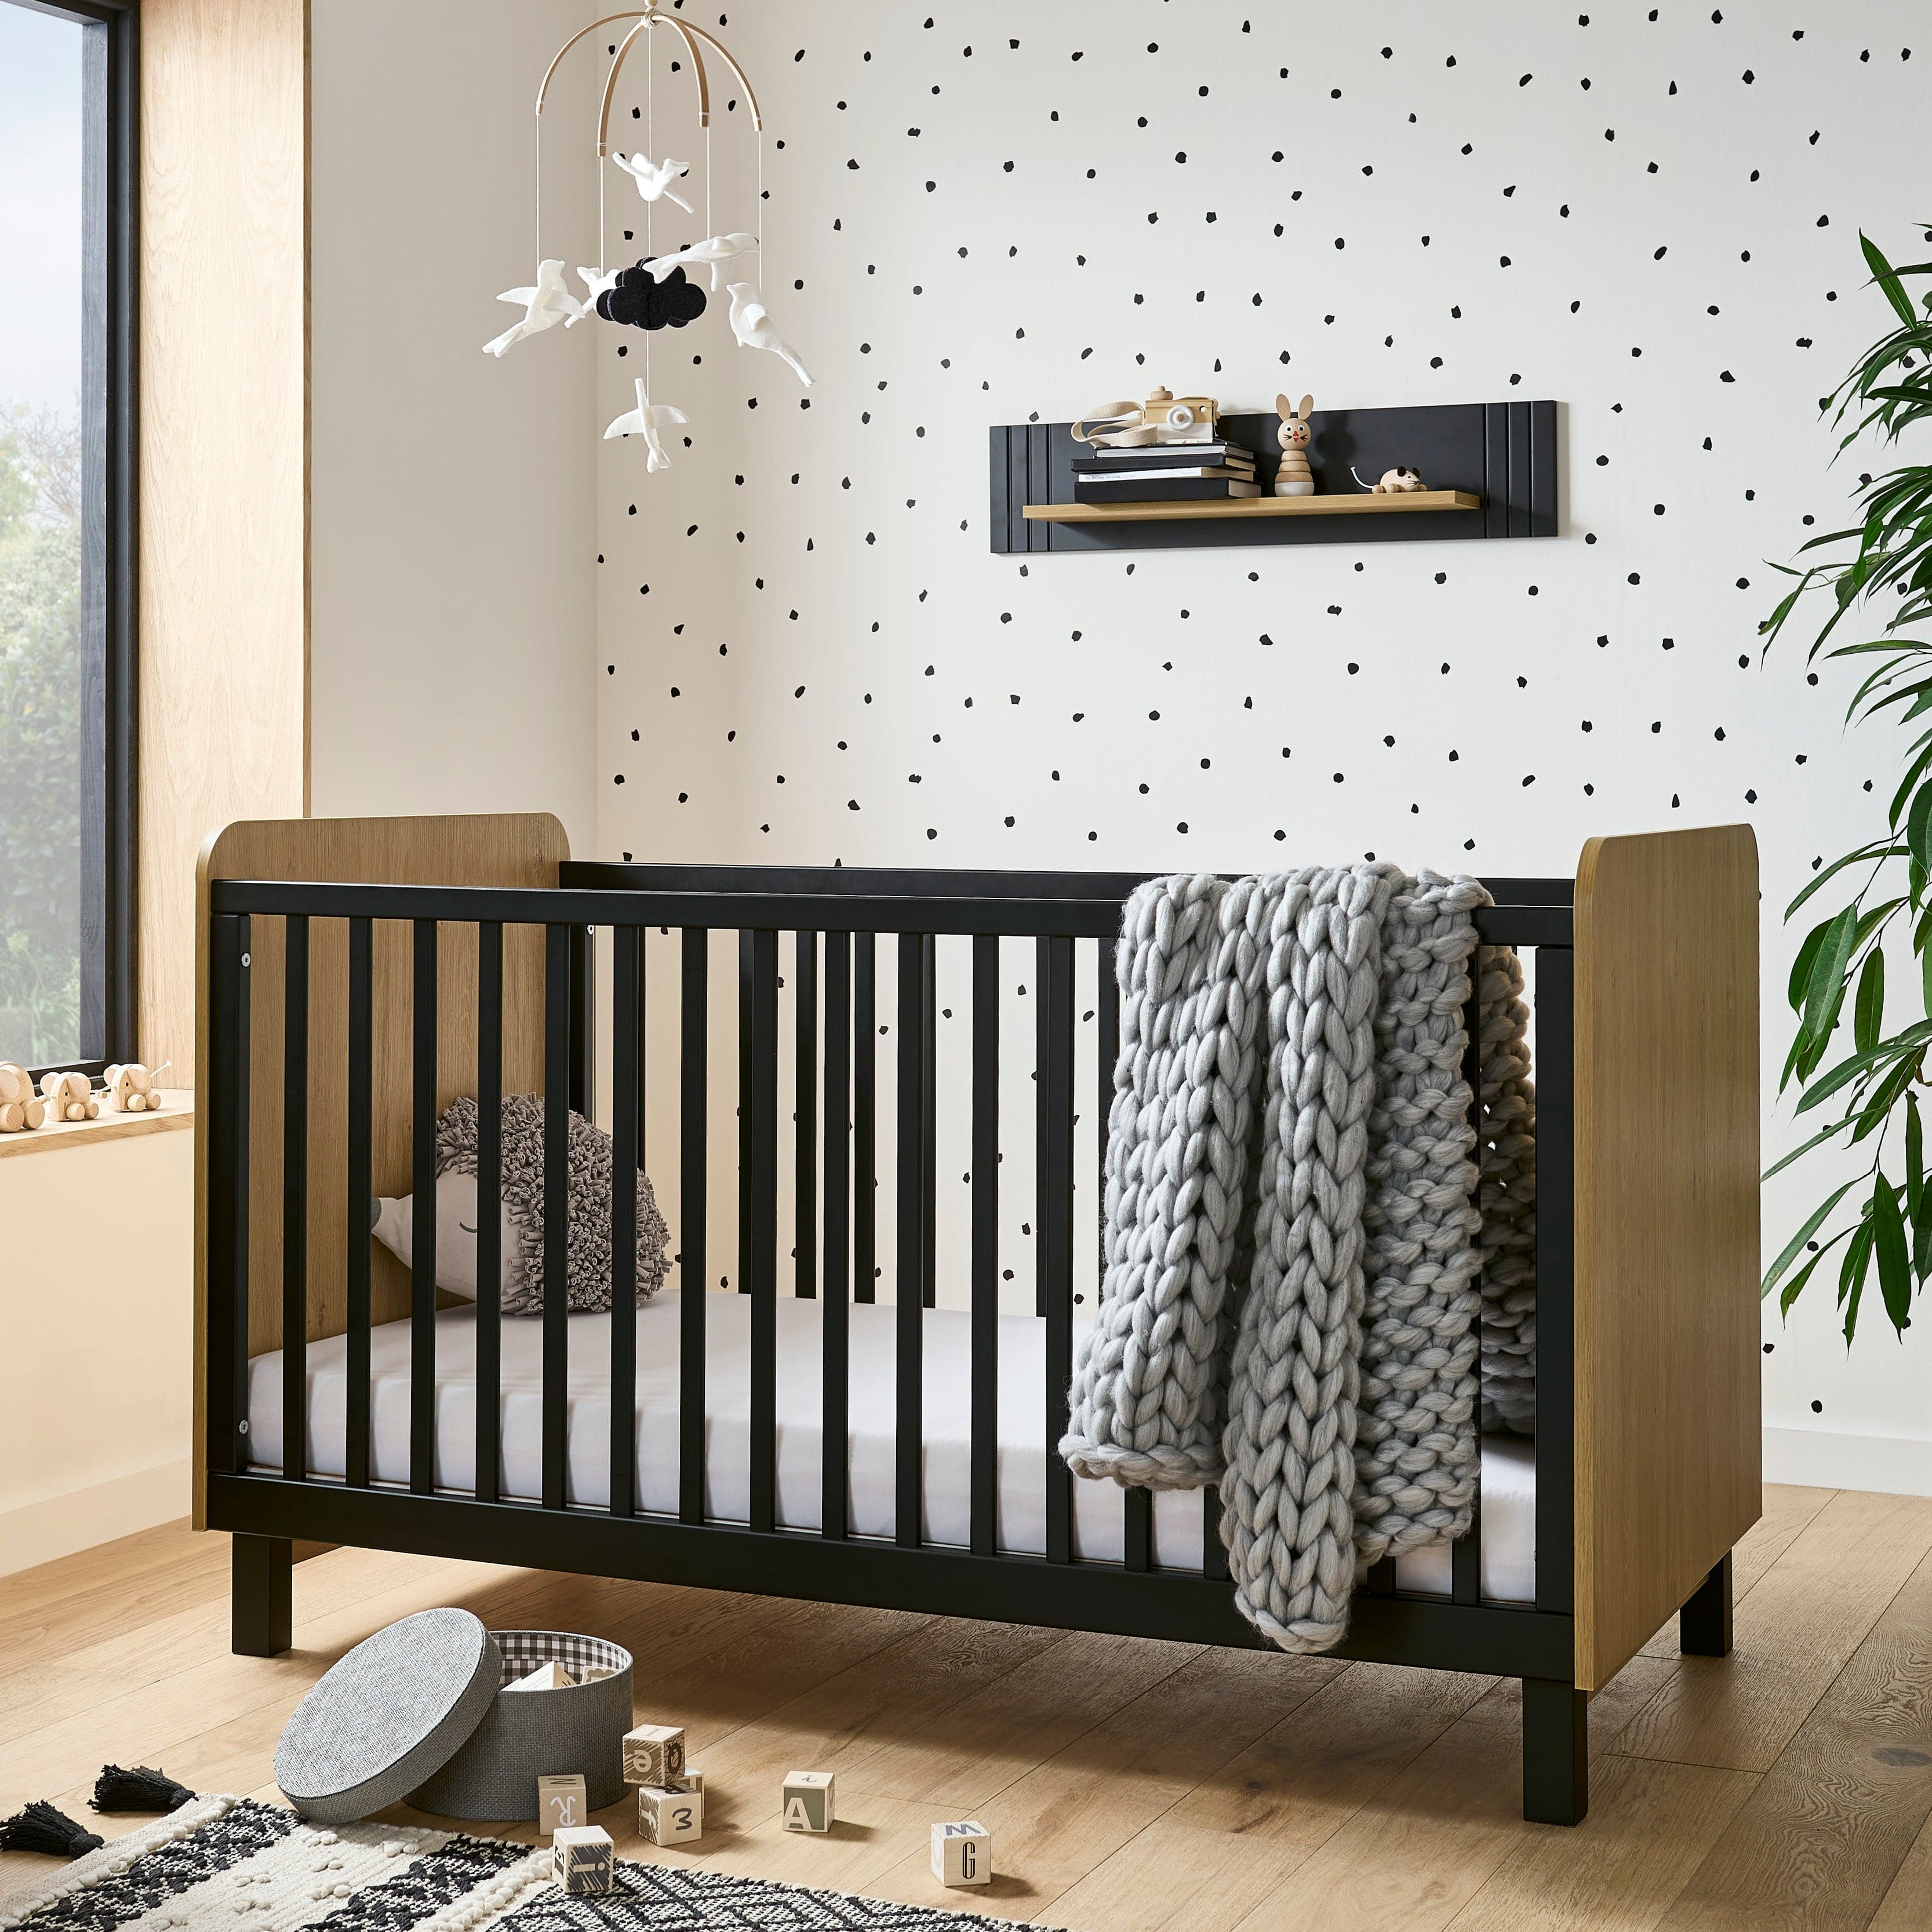 CuddleCo Rafi 4 Piece Room Set in Oak & Black Nursery Room Sets